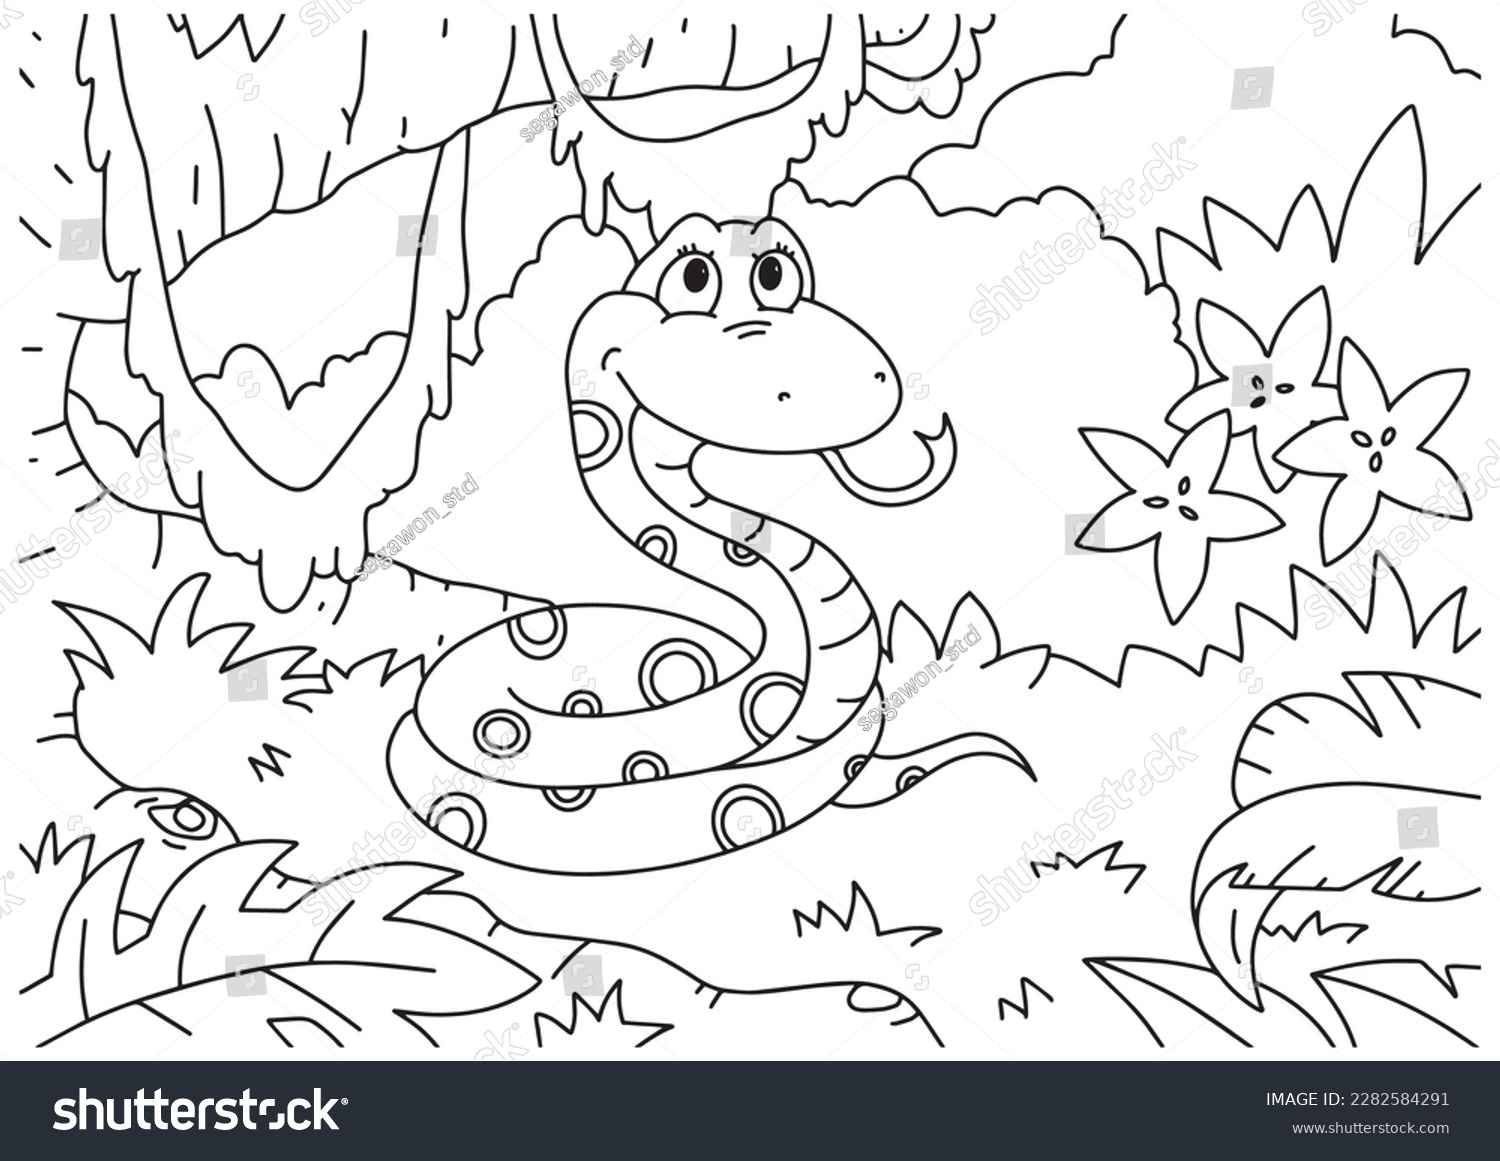 SVG of Children coloring book page 3 snake forest ilustration svg